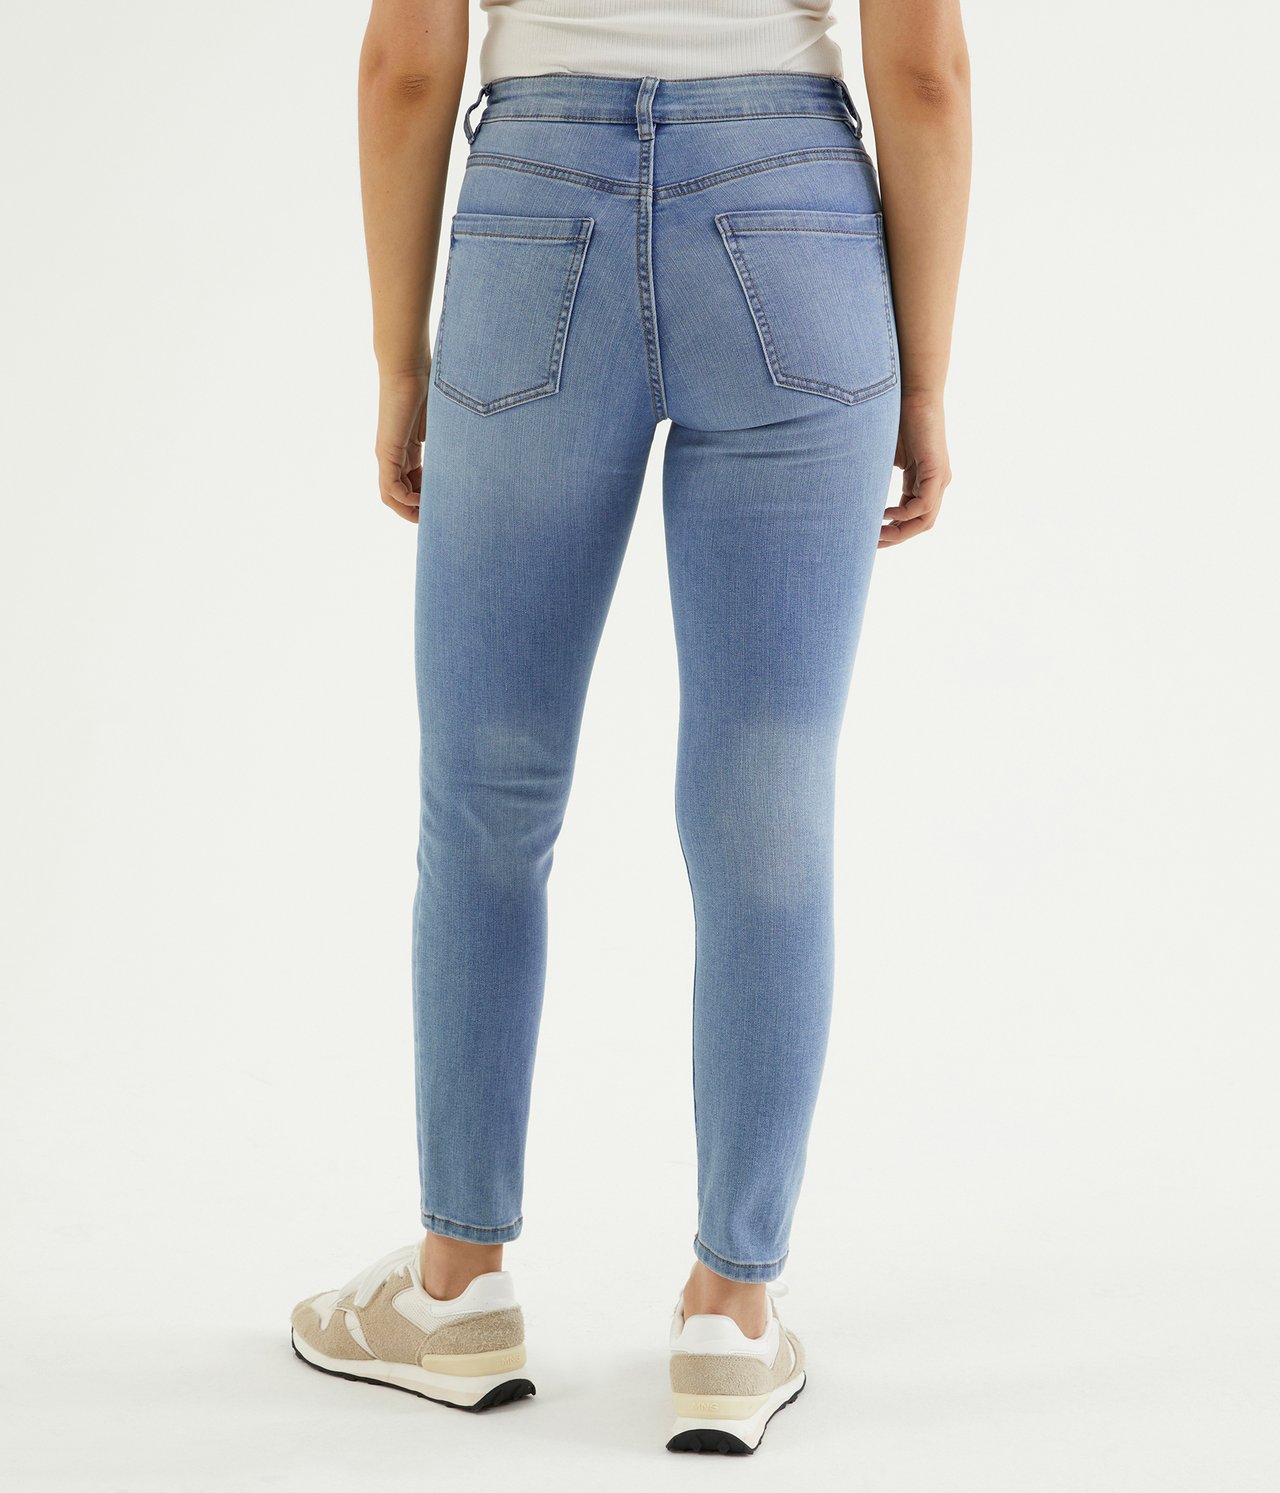 Cropped Slim Jeans Mid Waist - Jasny dżins - 7